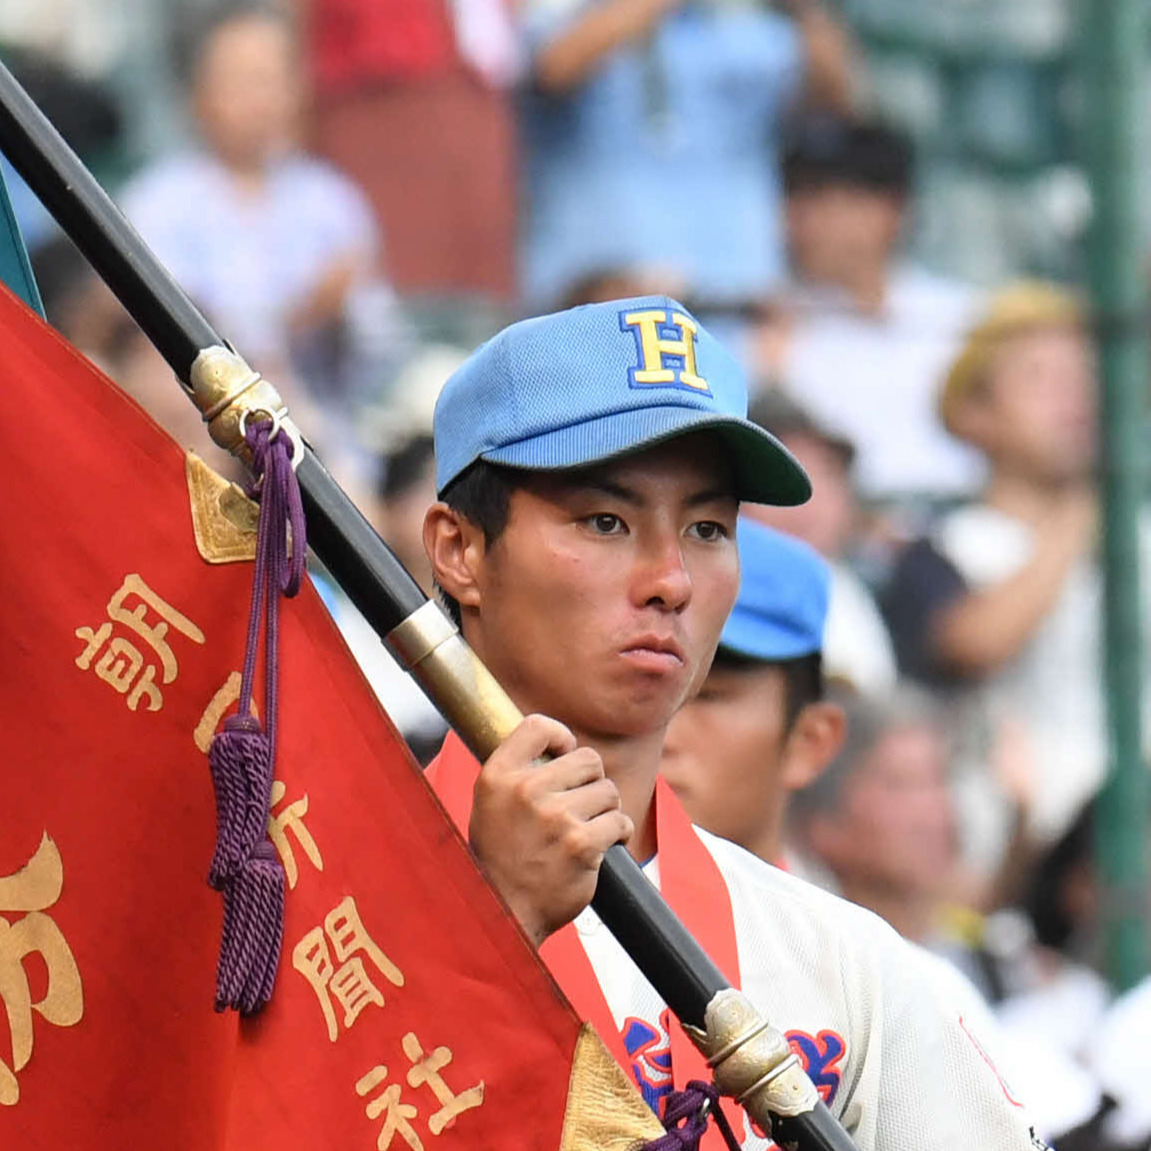 17年8月、全国高校野球選手権で優勝旗を手にする千丸剛被告